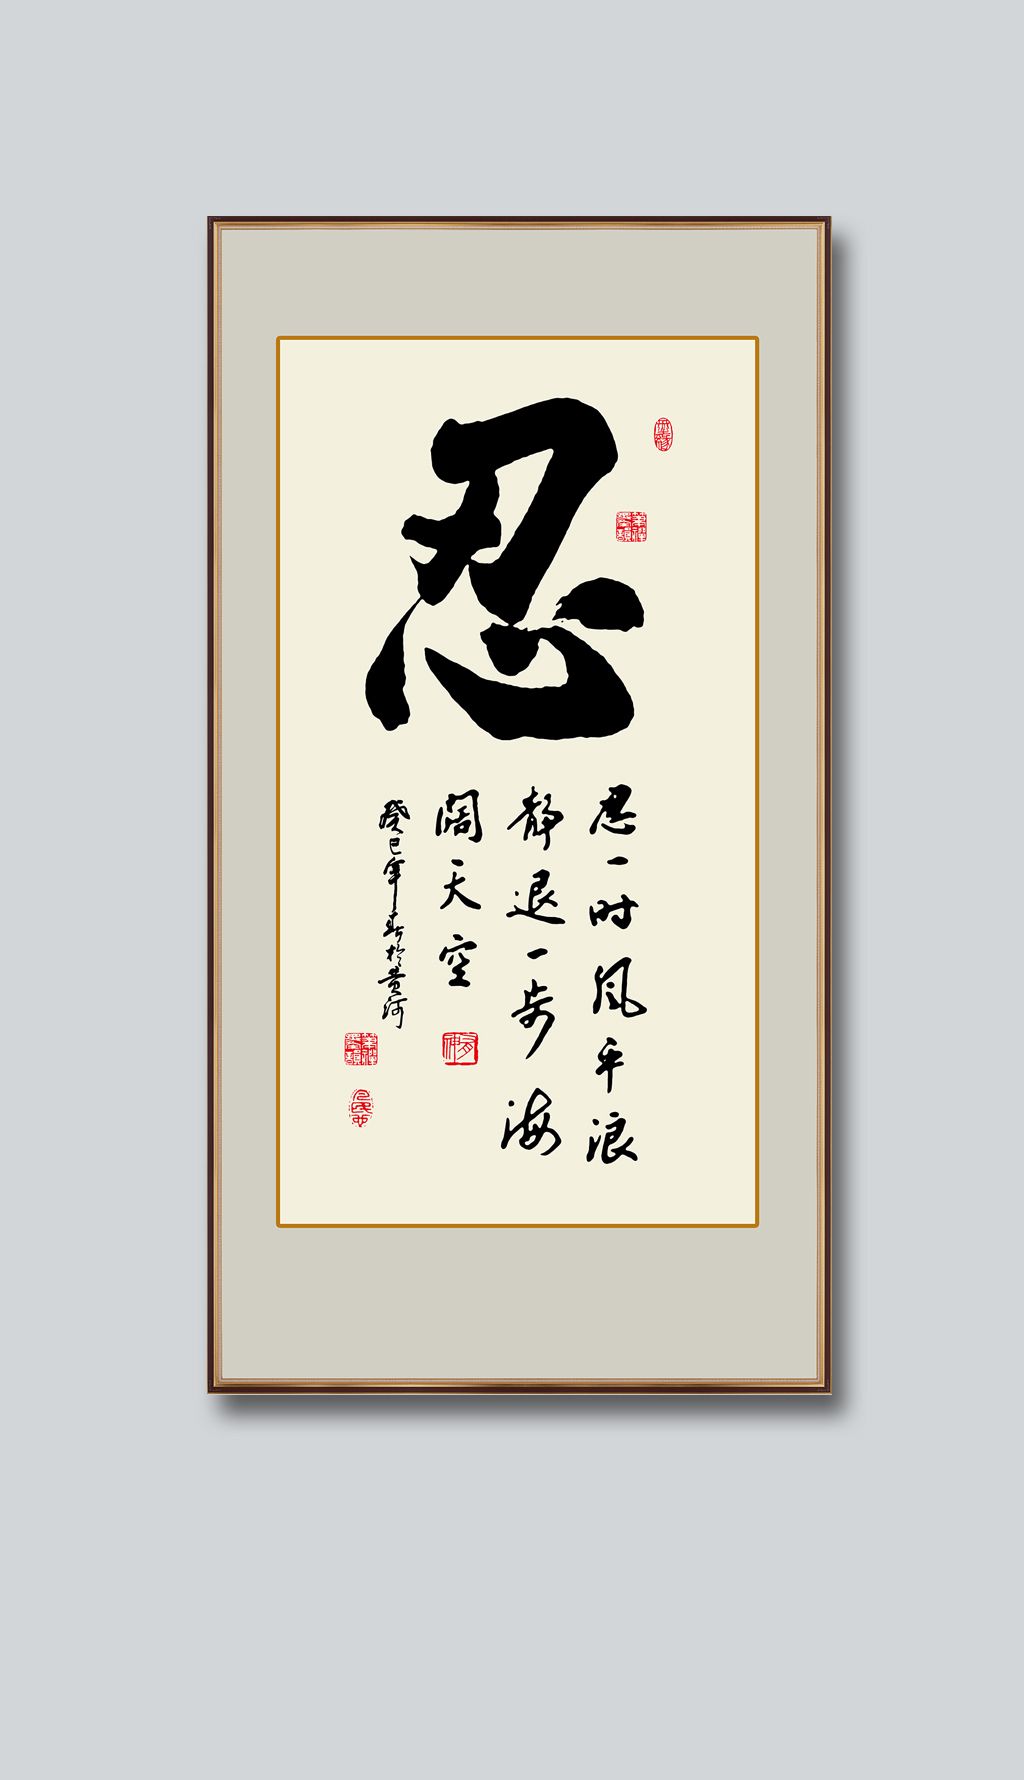 原创忍字书法毛笔艺术字中国书房励志装饰画挂画版权可商用